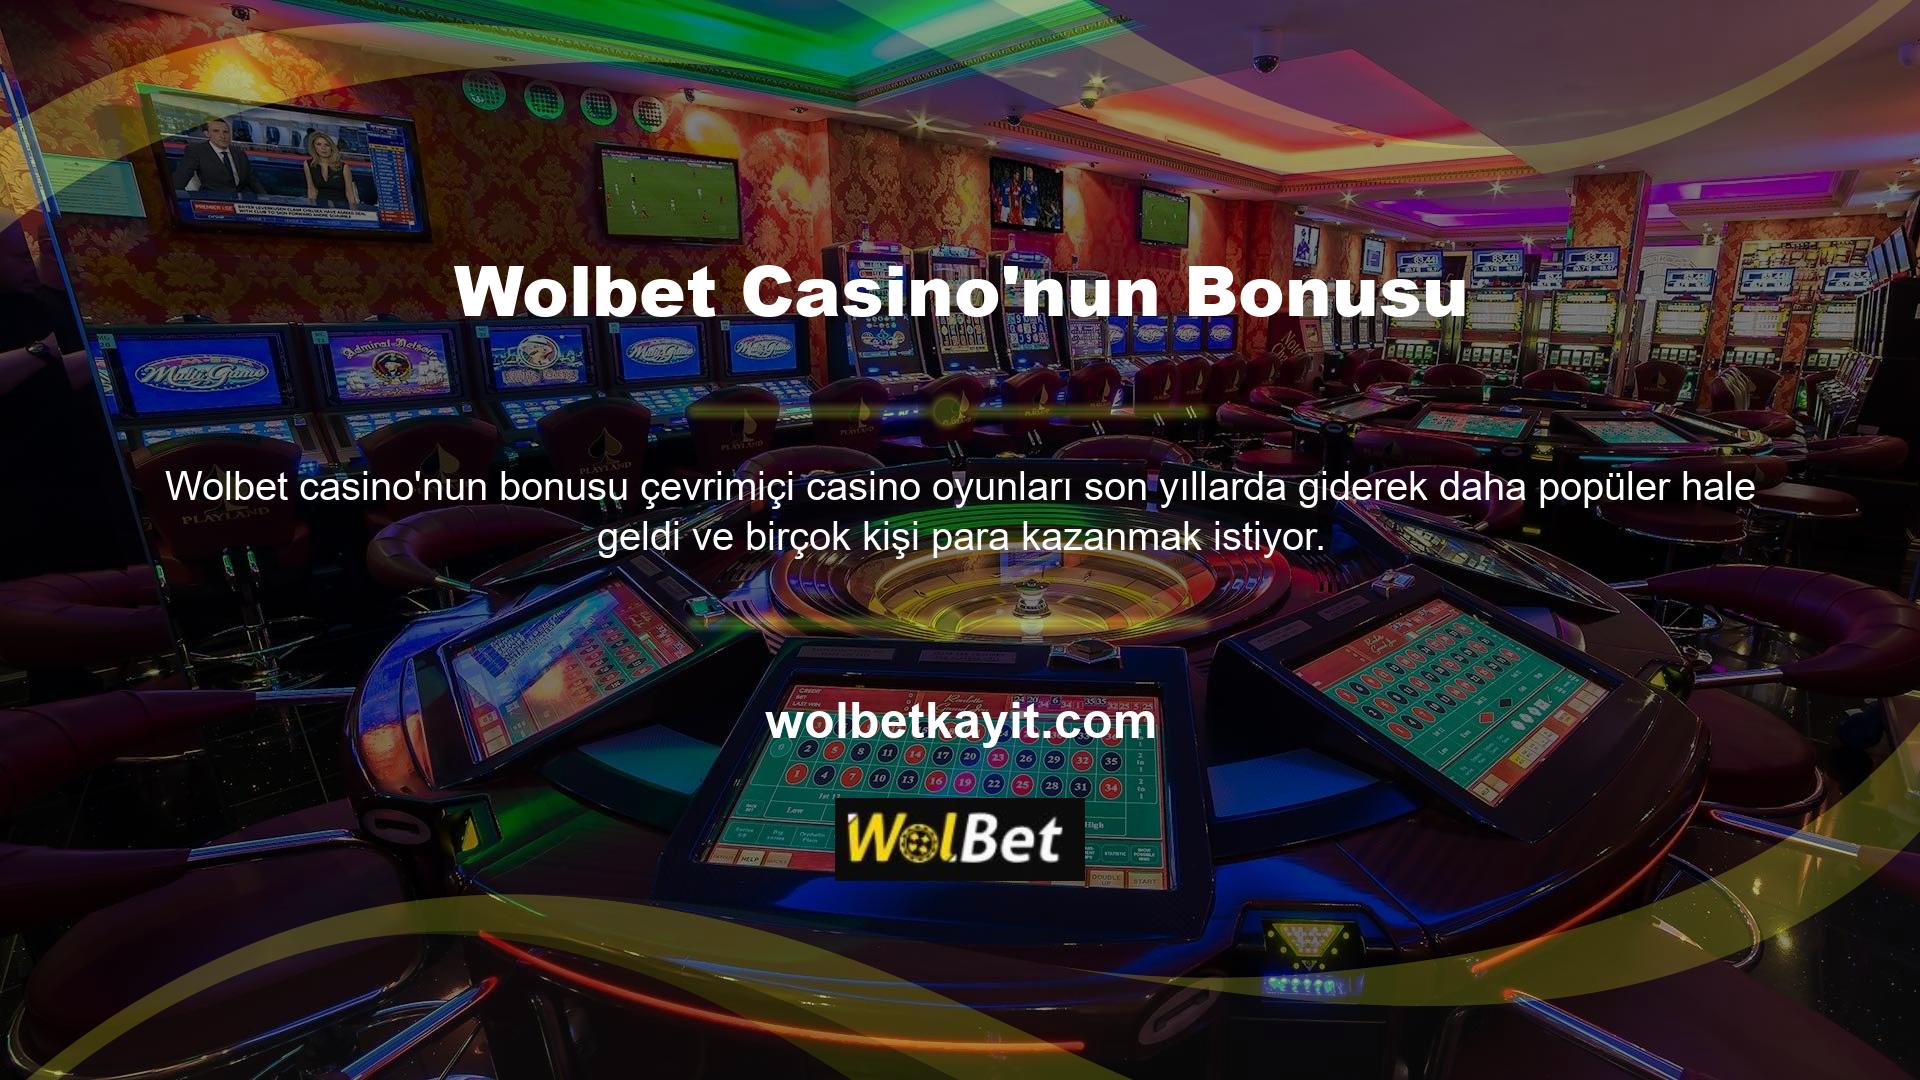 Wolbet casino bonusları, oyun tekliflerinin önemli bir bileşenidir